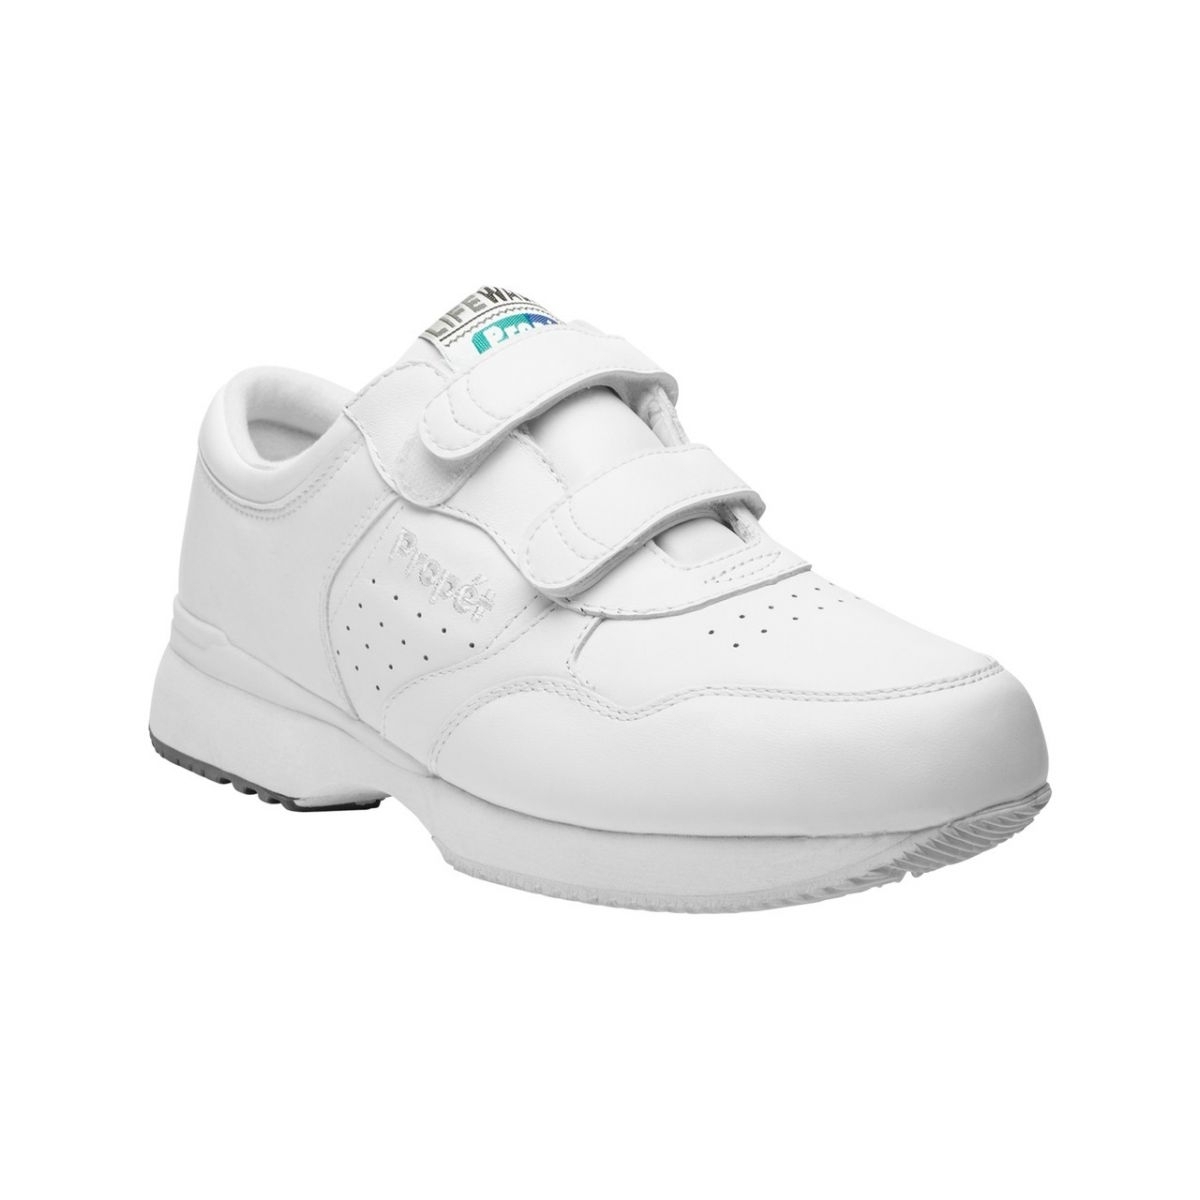 Propet Men's Life Walker Strap Shoe White - M3705WHT WHITE - WHITE, 14 X-Wide